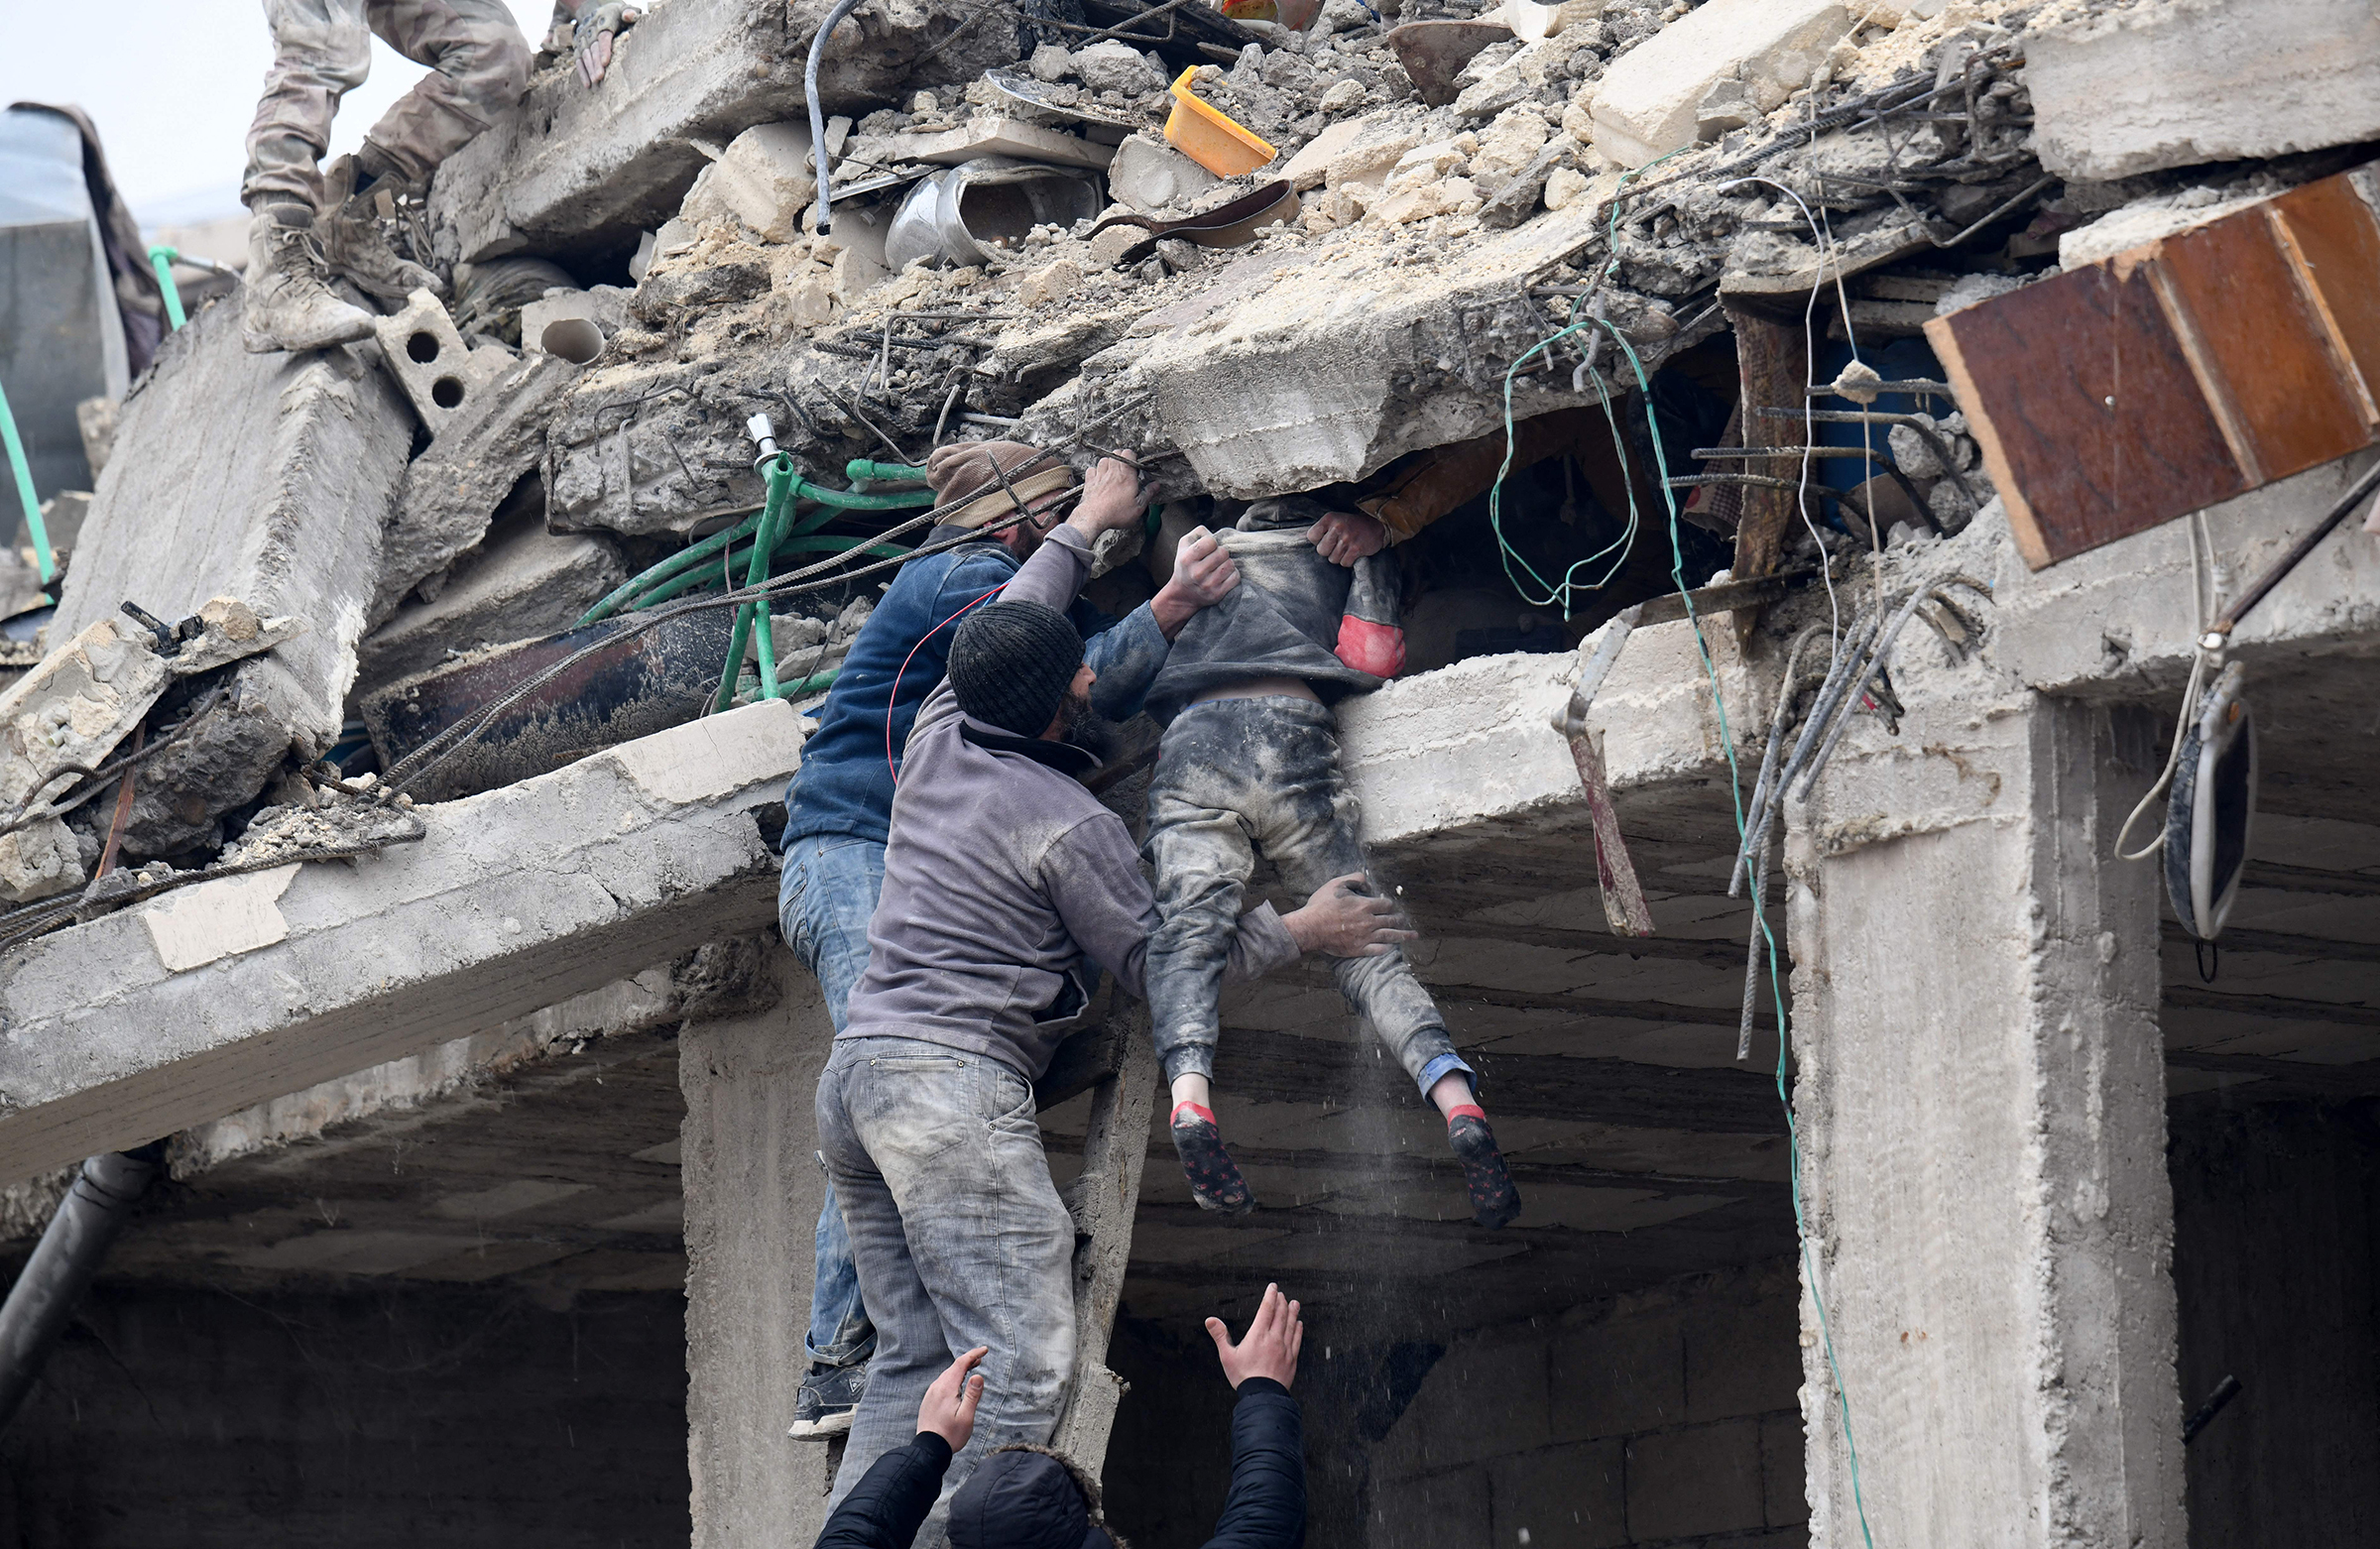 Sakinler, Suriye'nin kuzeybatısındaki Afrin i şehrinin kırsalındaki Jandaris kasabasında meydana gelen depremin ardından çöken bir binanın enkazından yaralı bir kızı çıkarıyor (Rami Al Sayed—AFP/Getty Images)